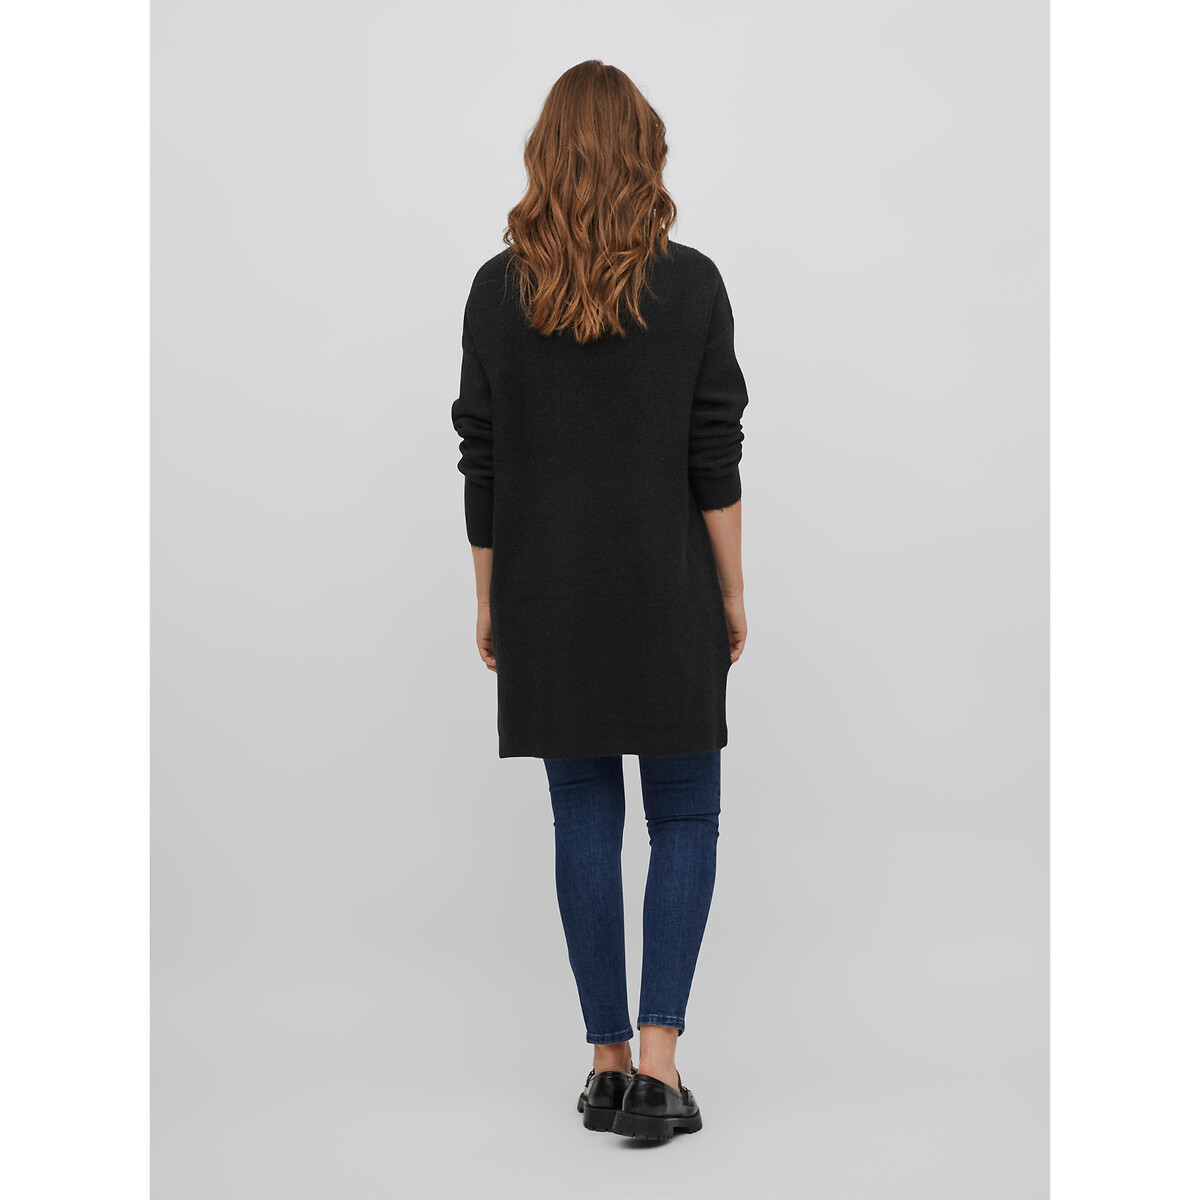 Платье-пуловер VILA Платье-пуловер С длинным воротником XL черный, размер XL - фото 3